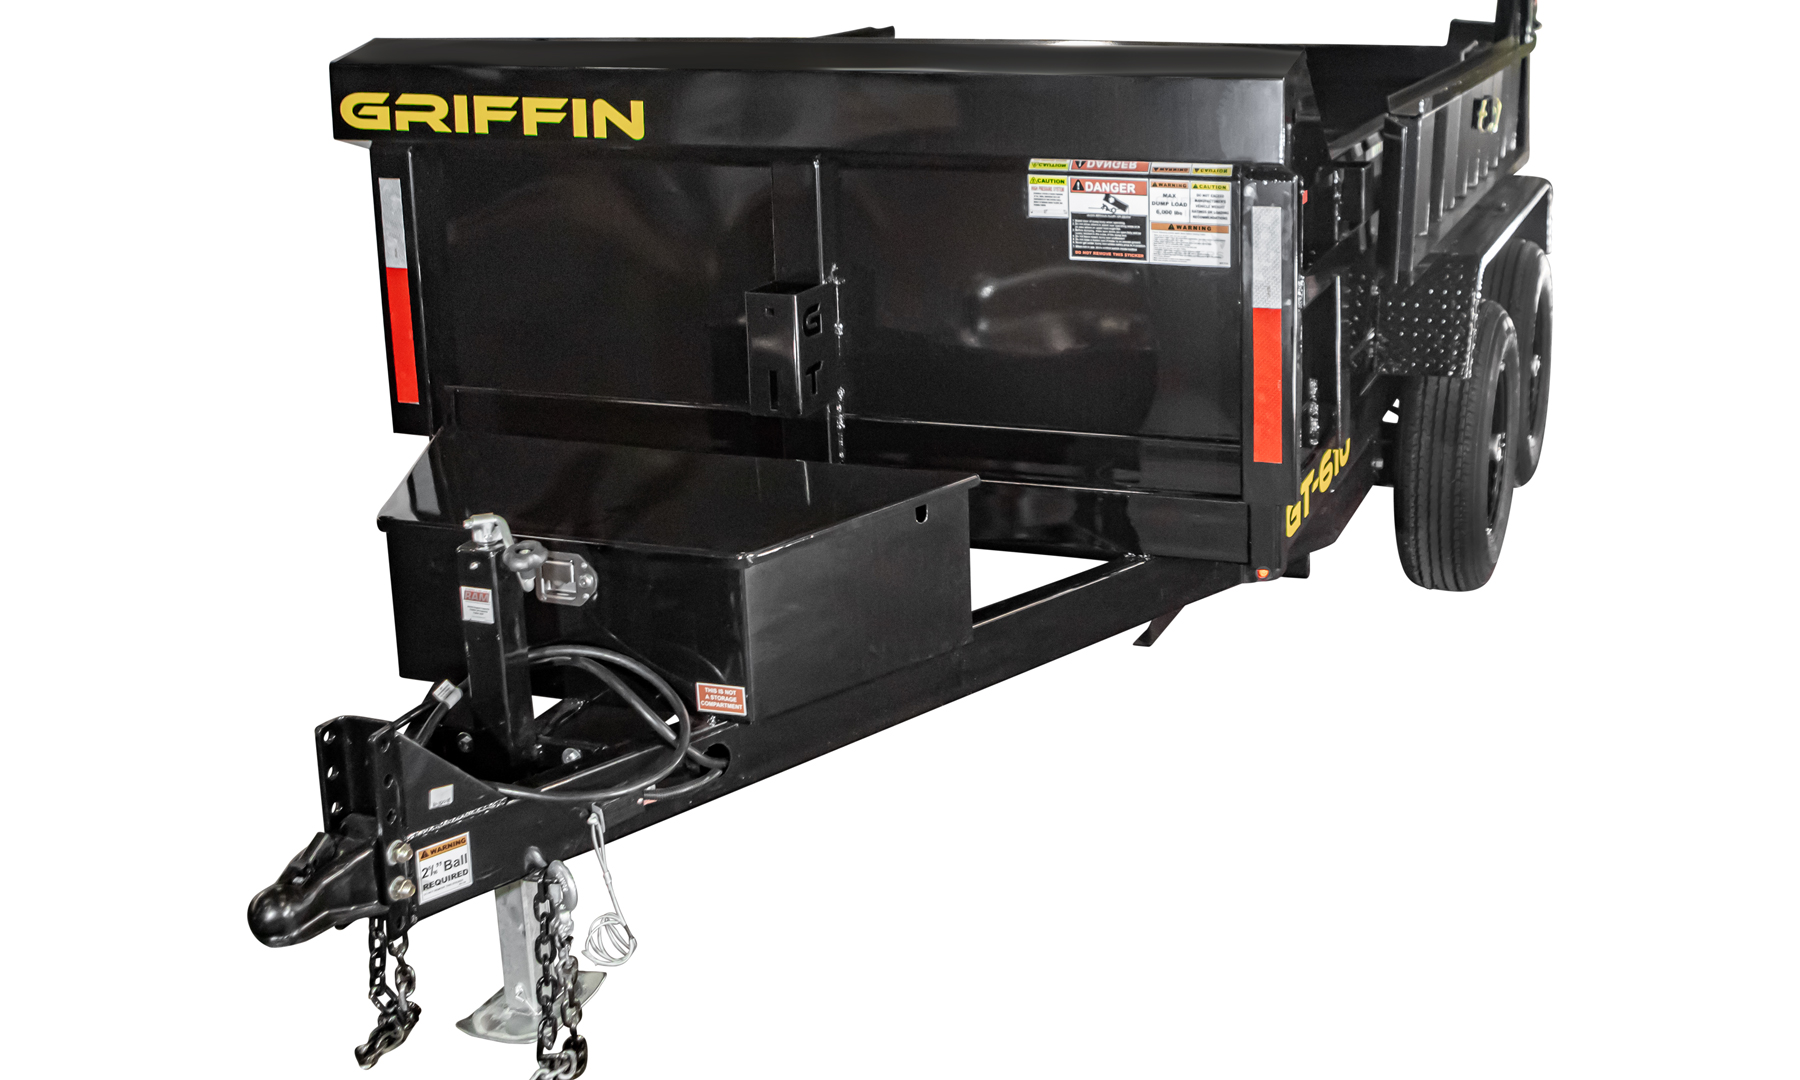 Griffin Trailers - GT5X8 Hydraulic Dump Trailer